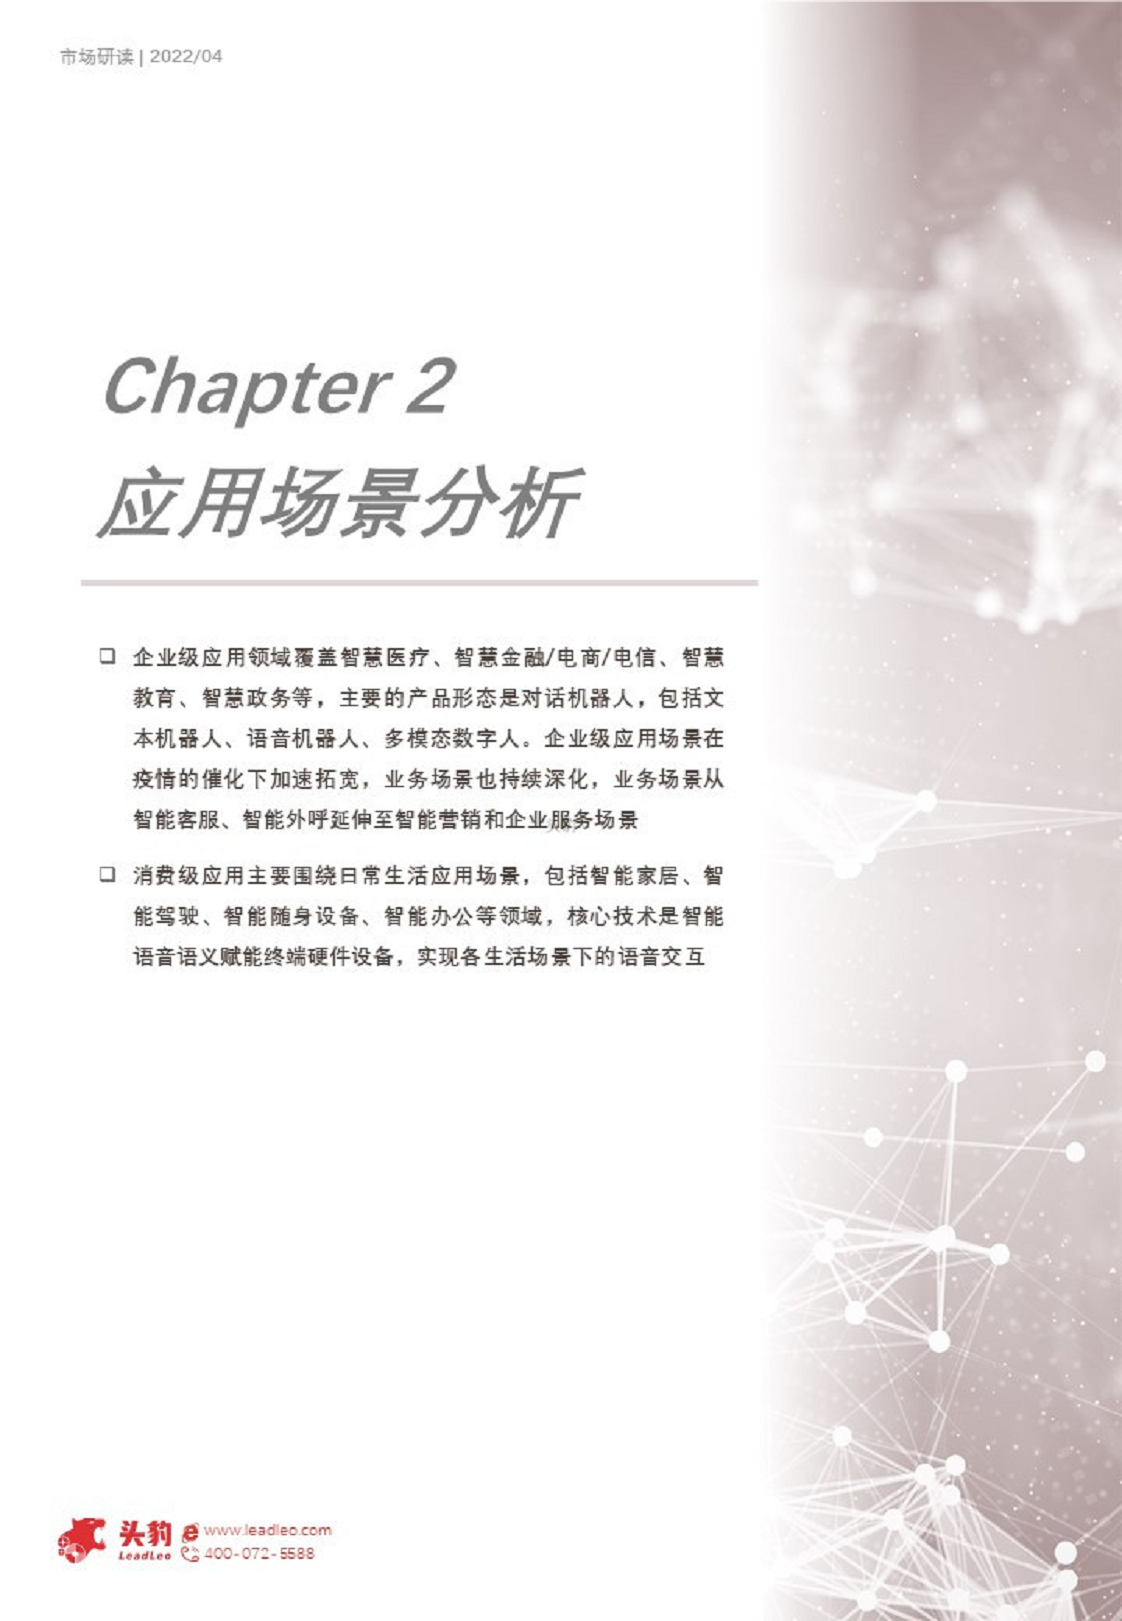 2022年人工智能系列短报告：中国对话式AI市场应用探析图片